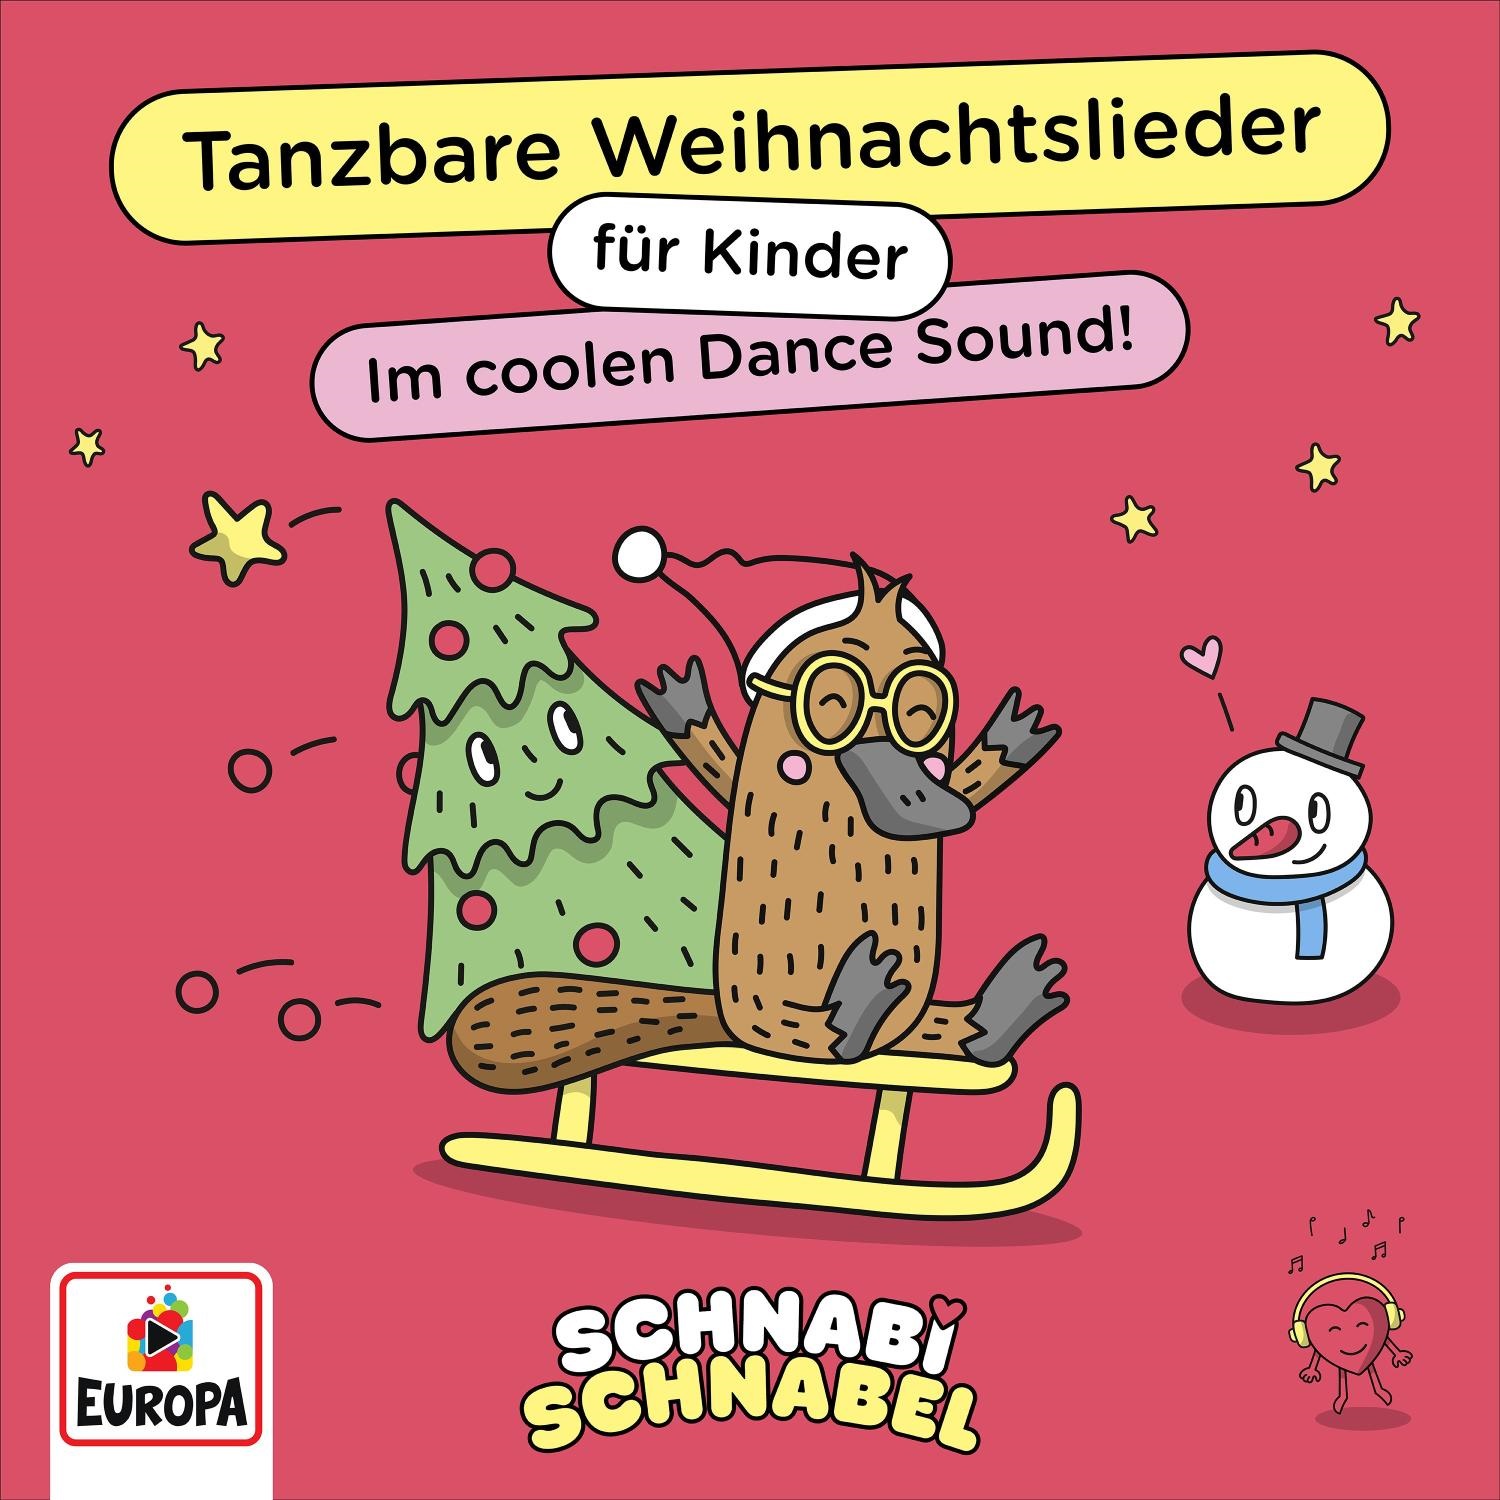 Schnabi Schnabel - Tanzbare Weihnachtslieder für Kinder!